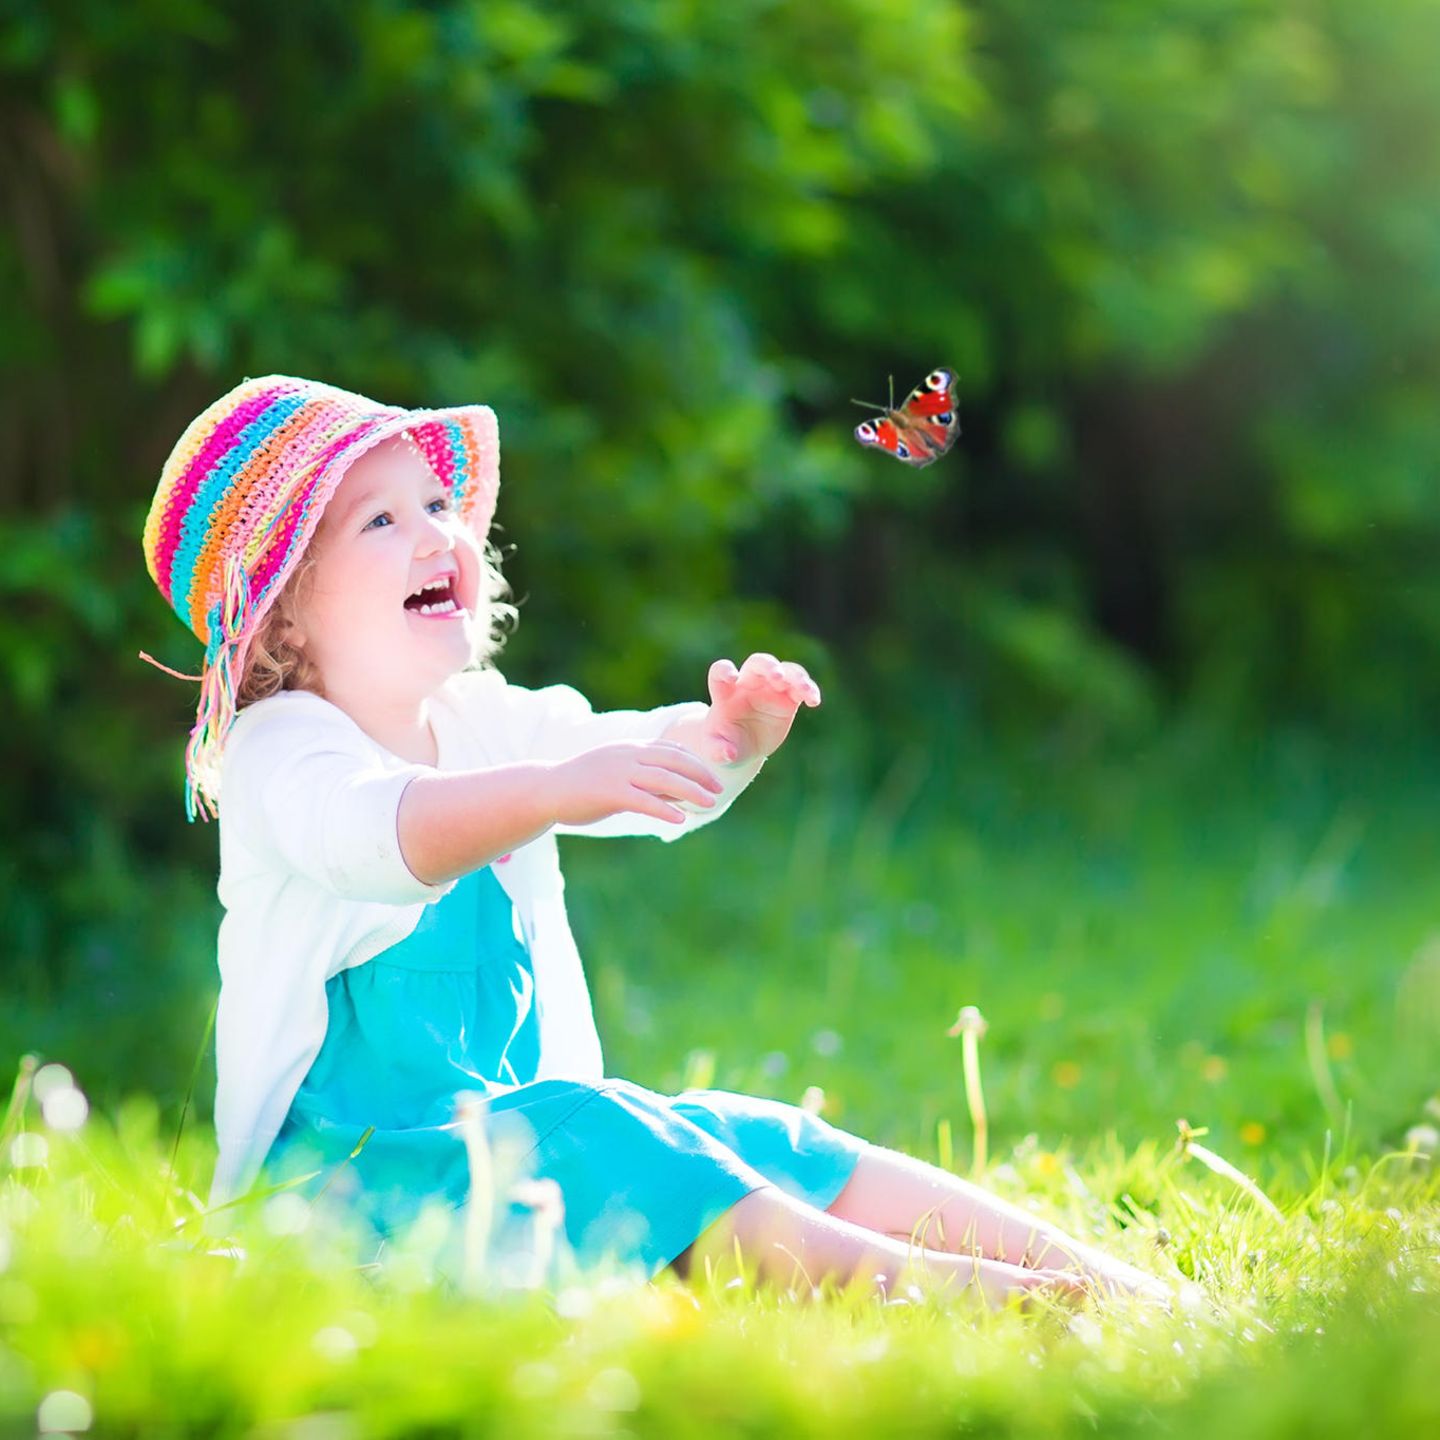 Elternzeit: Kind spielt mit Schmetterling